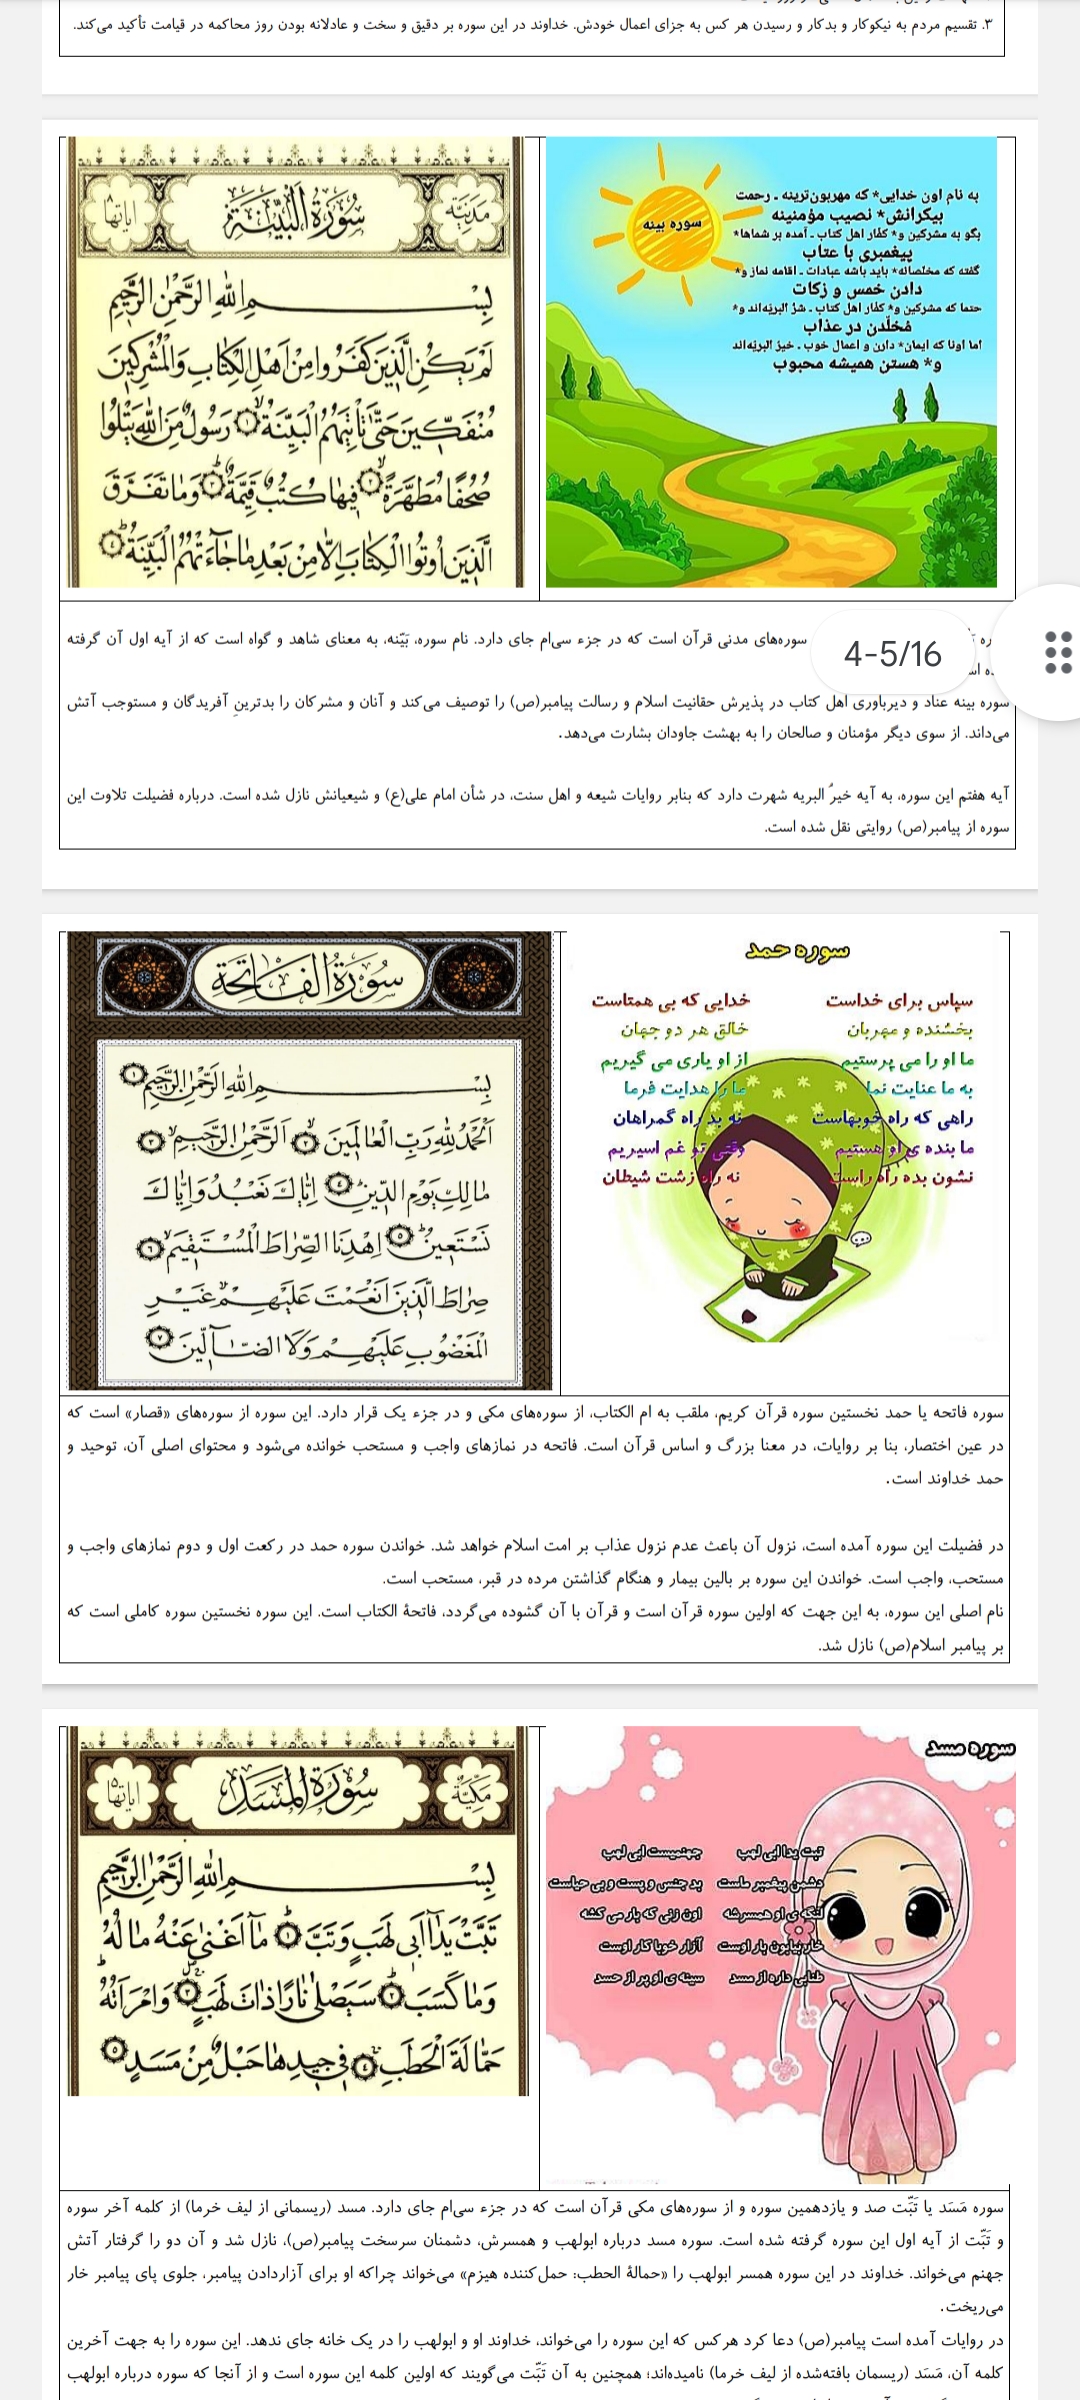 آموزش حفظ ۱۶ سوره کوچک قرآنی با اشعار زیبا،  تصاویر رنگی و معرفی کوتاه آن سوره